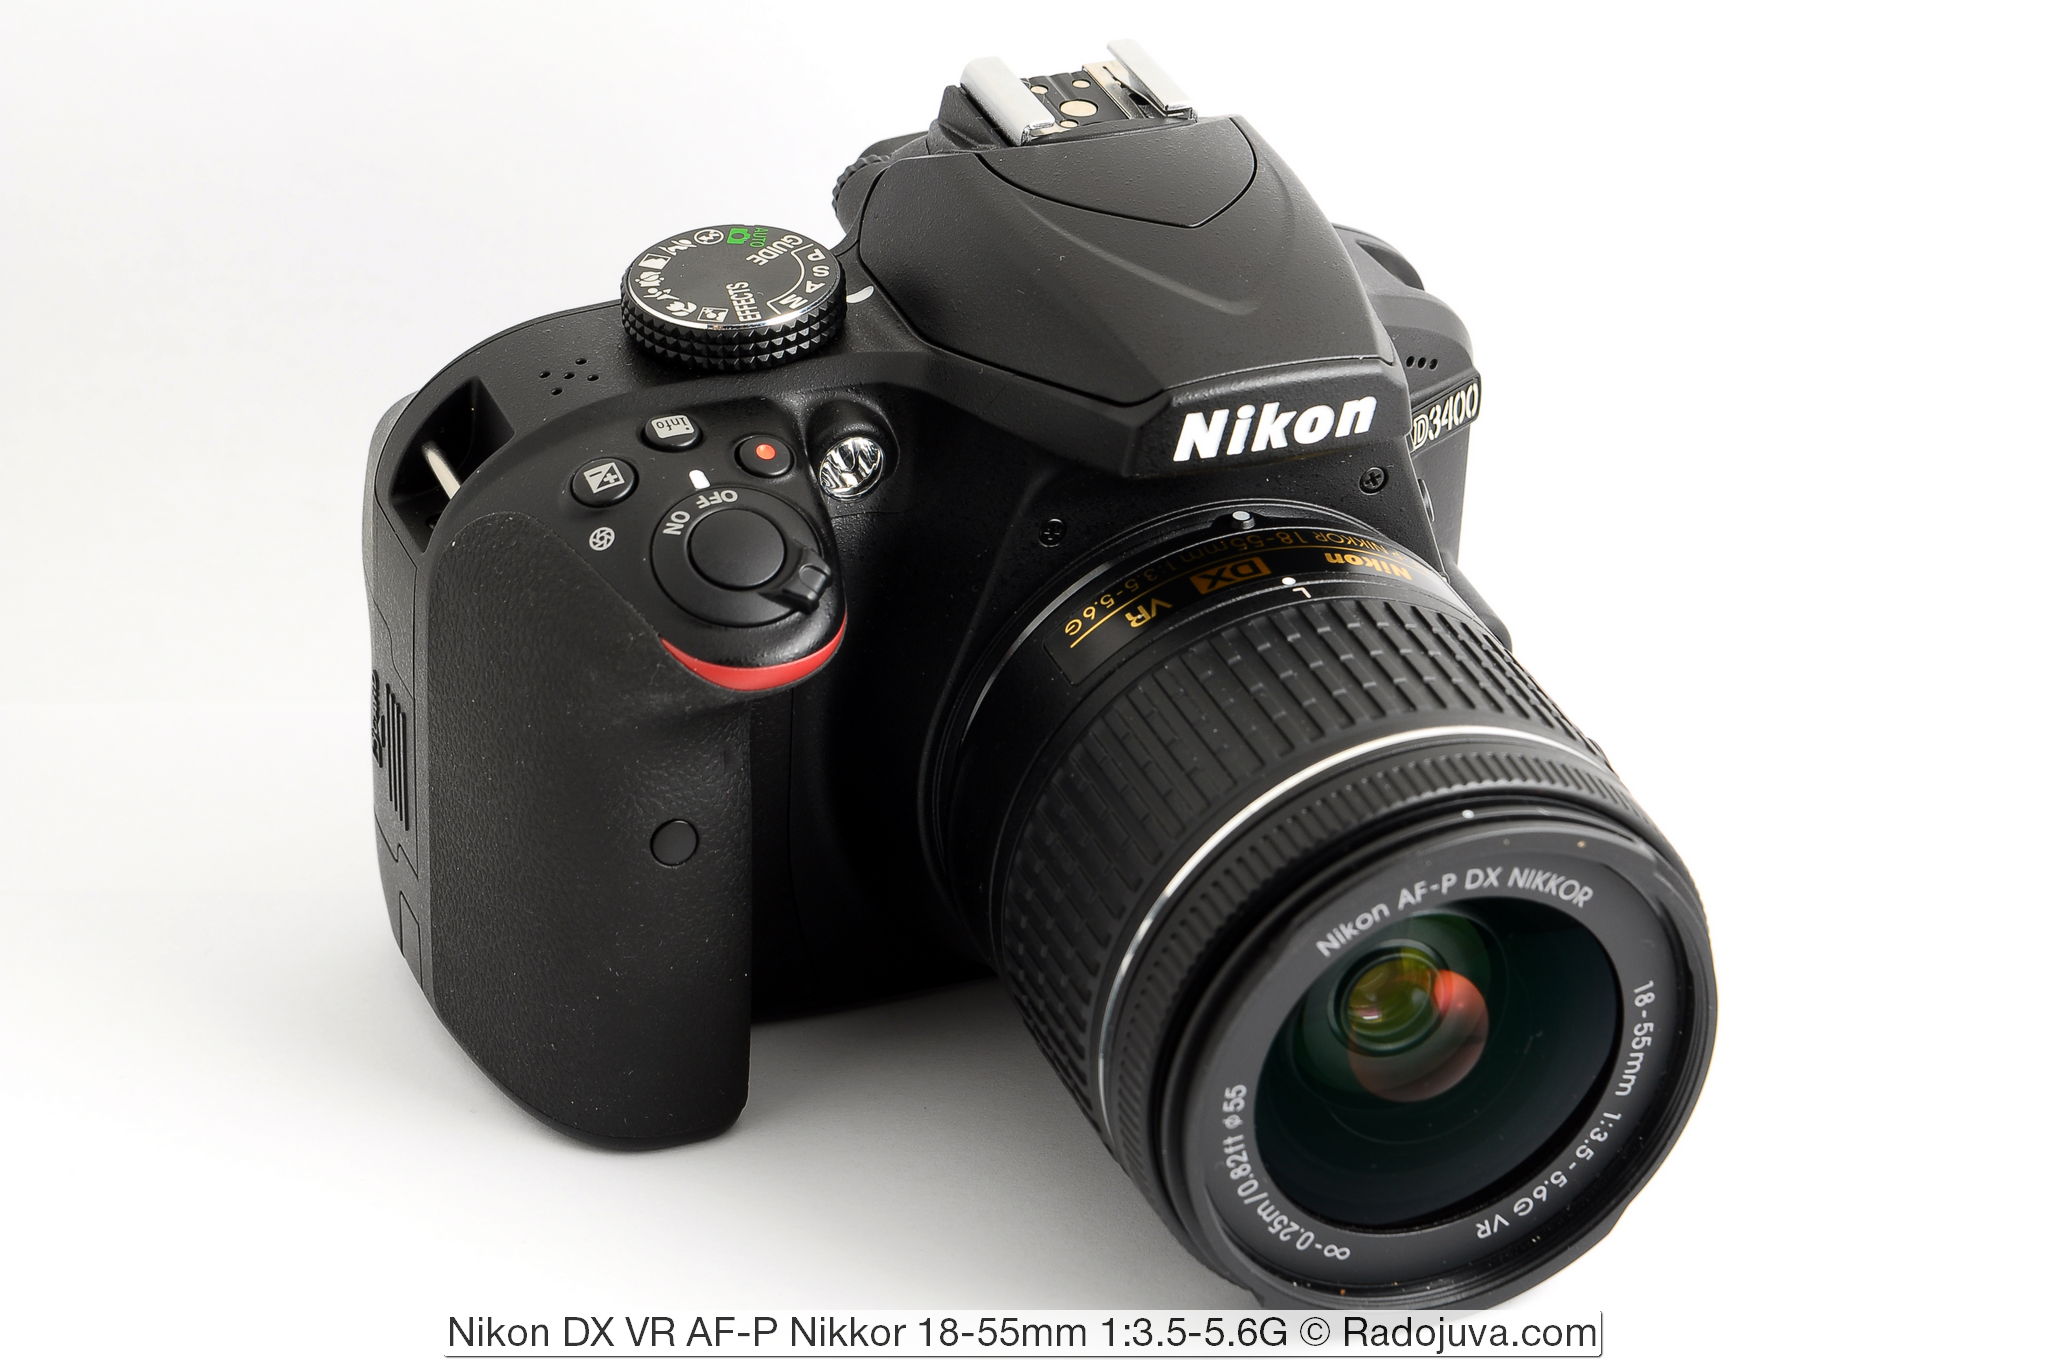 Nikon DX VR AF-P Nikkor 18-55mm 1: 3.5-5.6G and Nikon D3400 camera